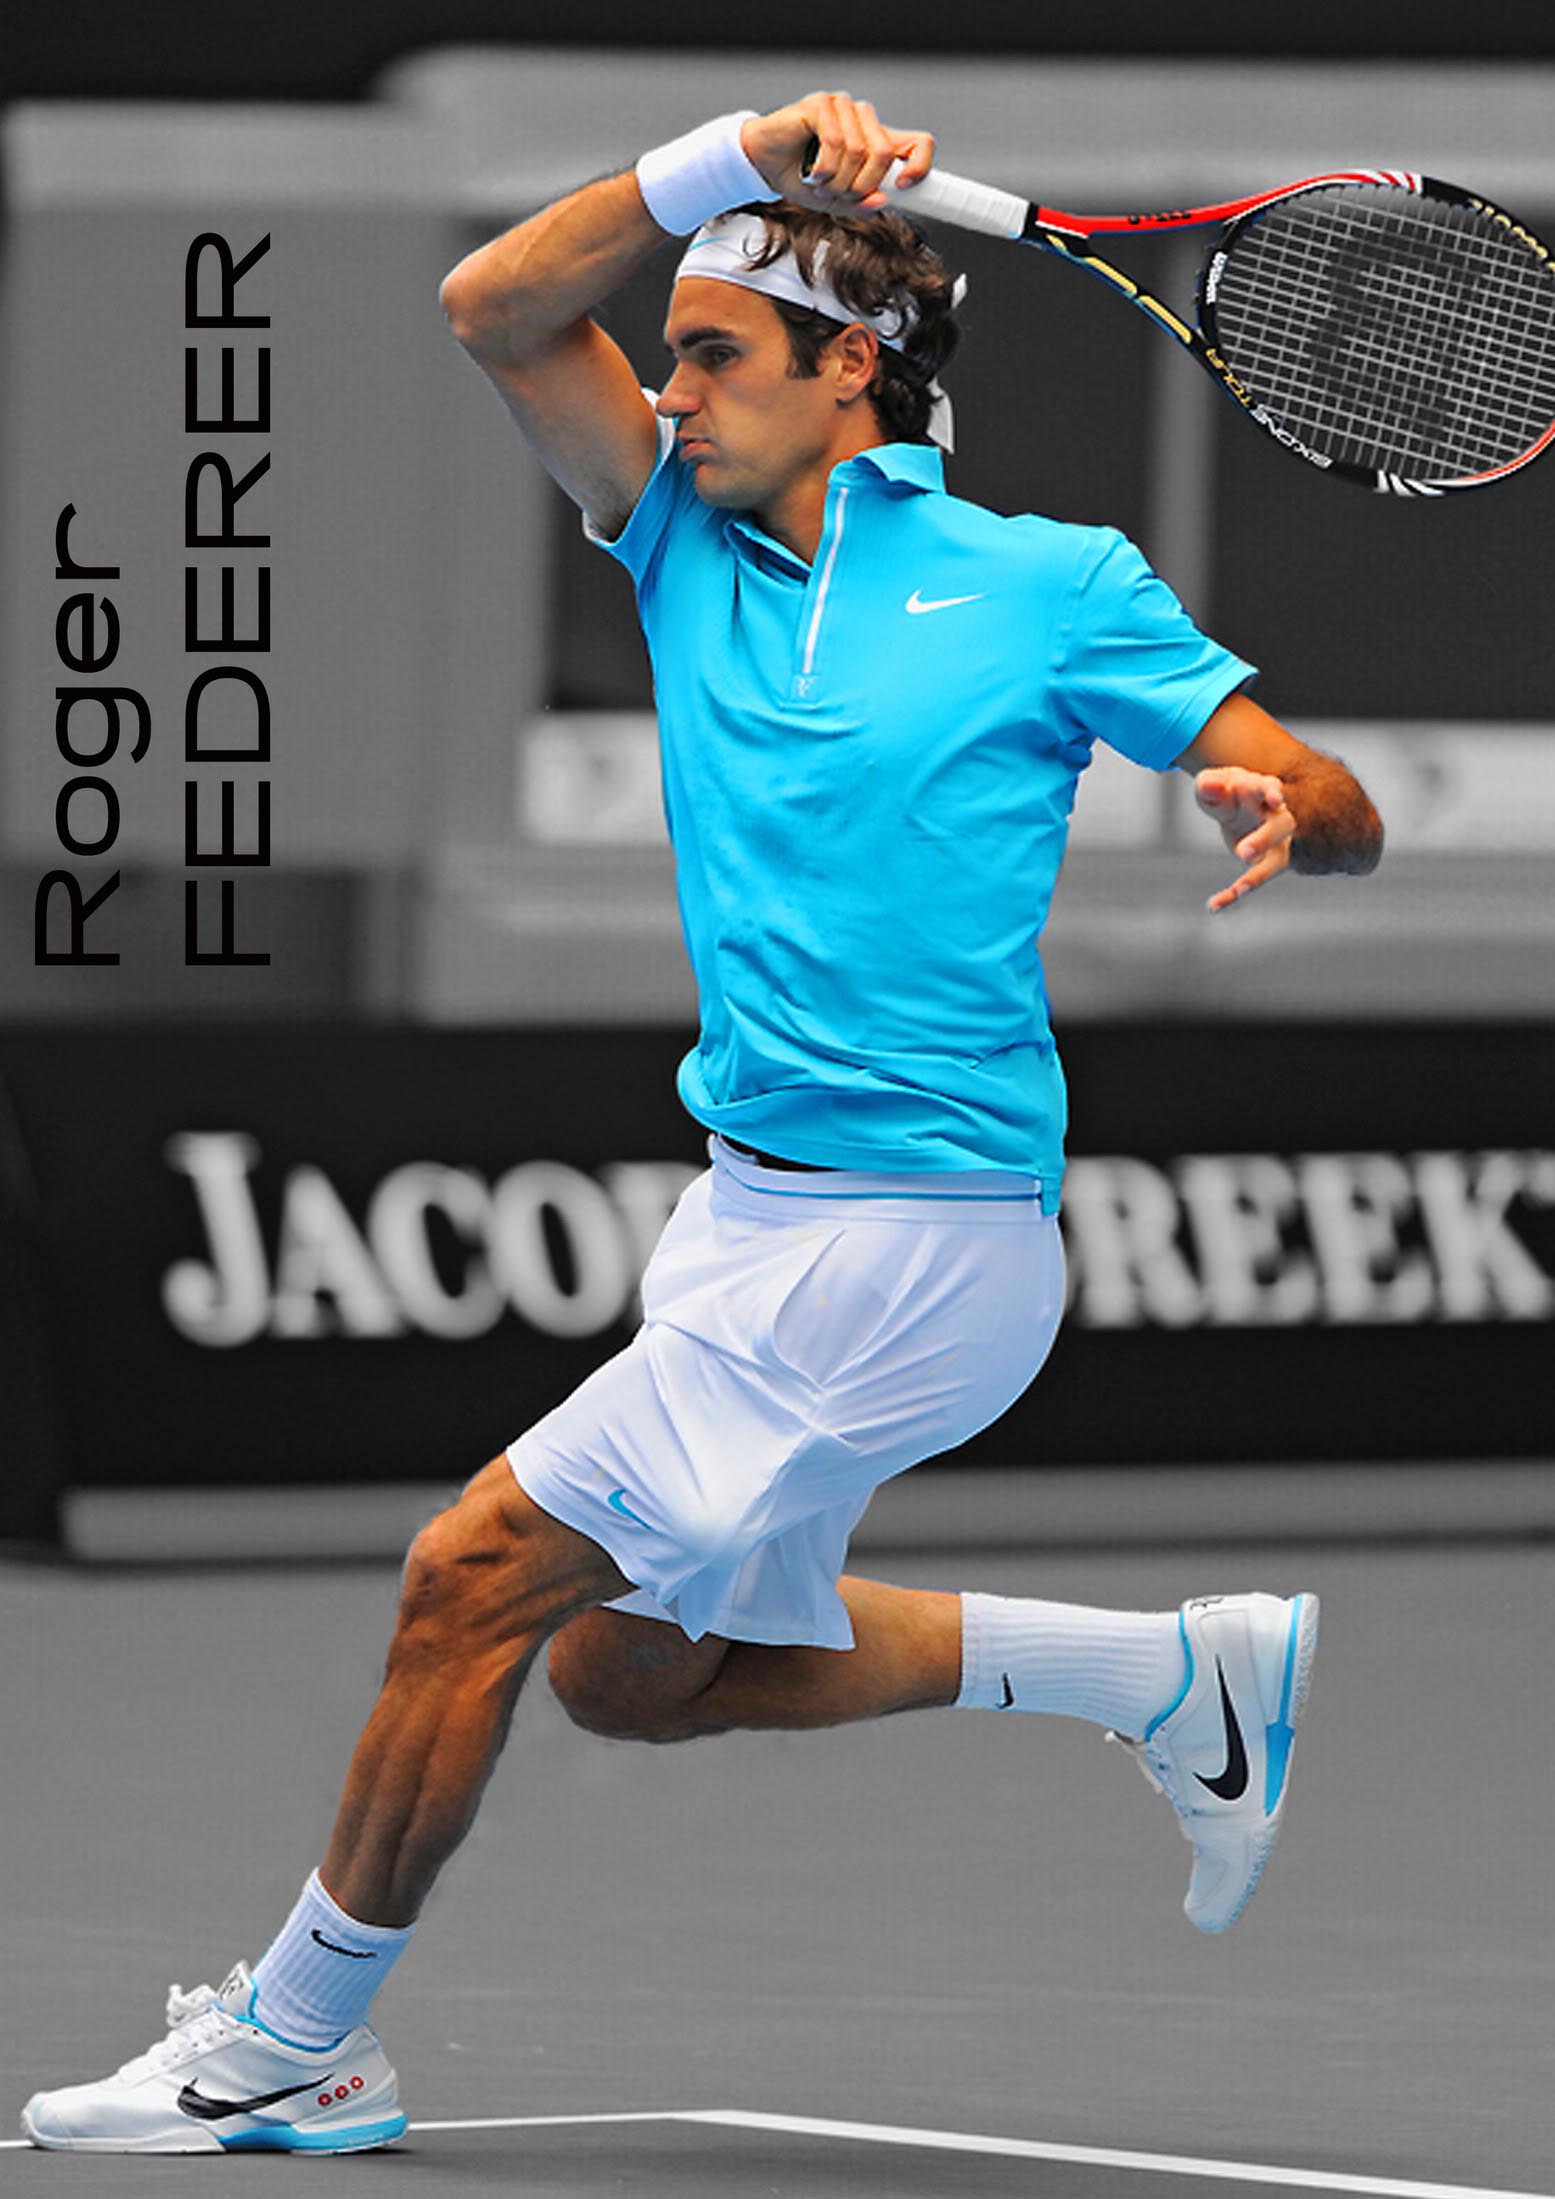 roger federer2 Roger Federer No. 2 ATP Tennis Player